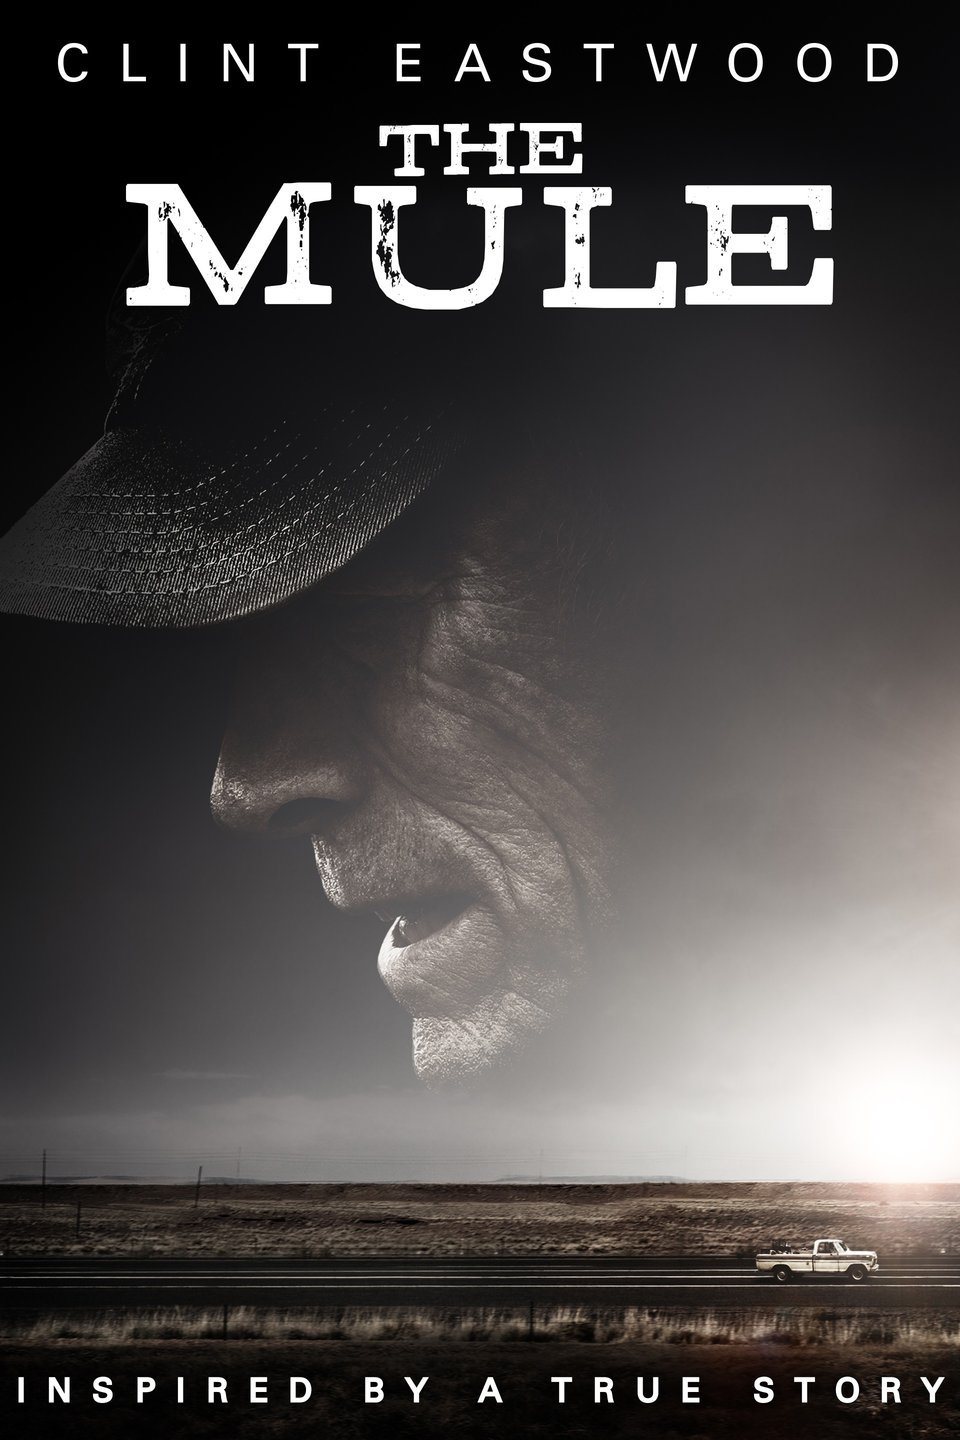 [ฝรั่ง] The Mule (2018) เดอะ มิวล์ [1080p] [พากย์ไทย 5.1 + เสียงอังกฤษ 5.1] [บรรยายไทย + อังกฤษ] [เสียงไทย + ซับไทย] [PANDAFILE]